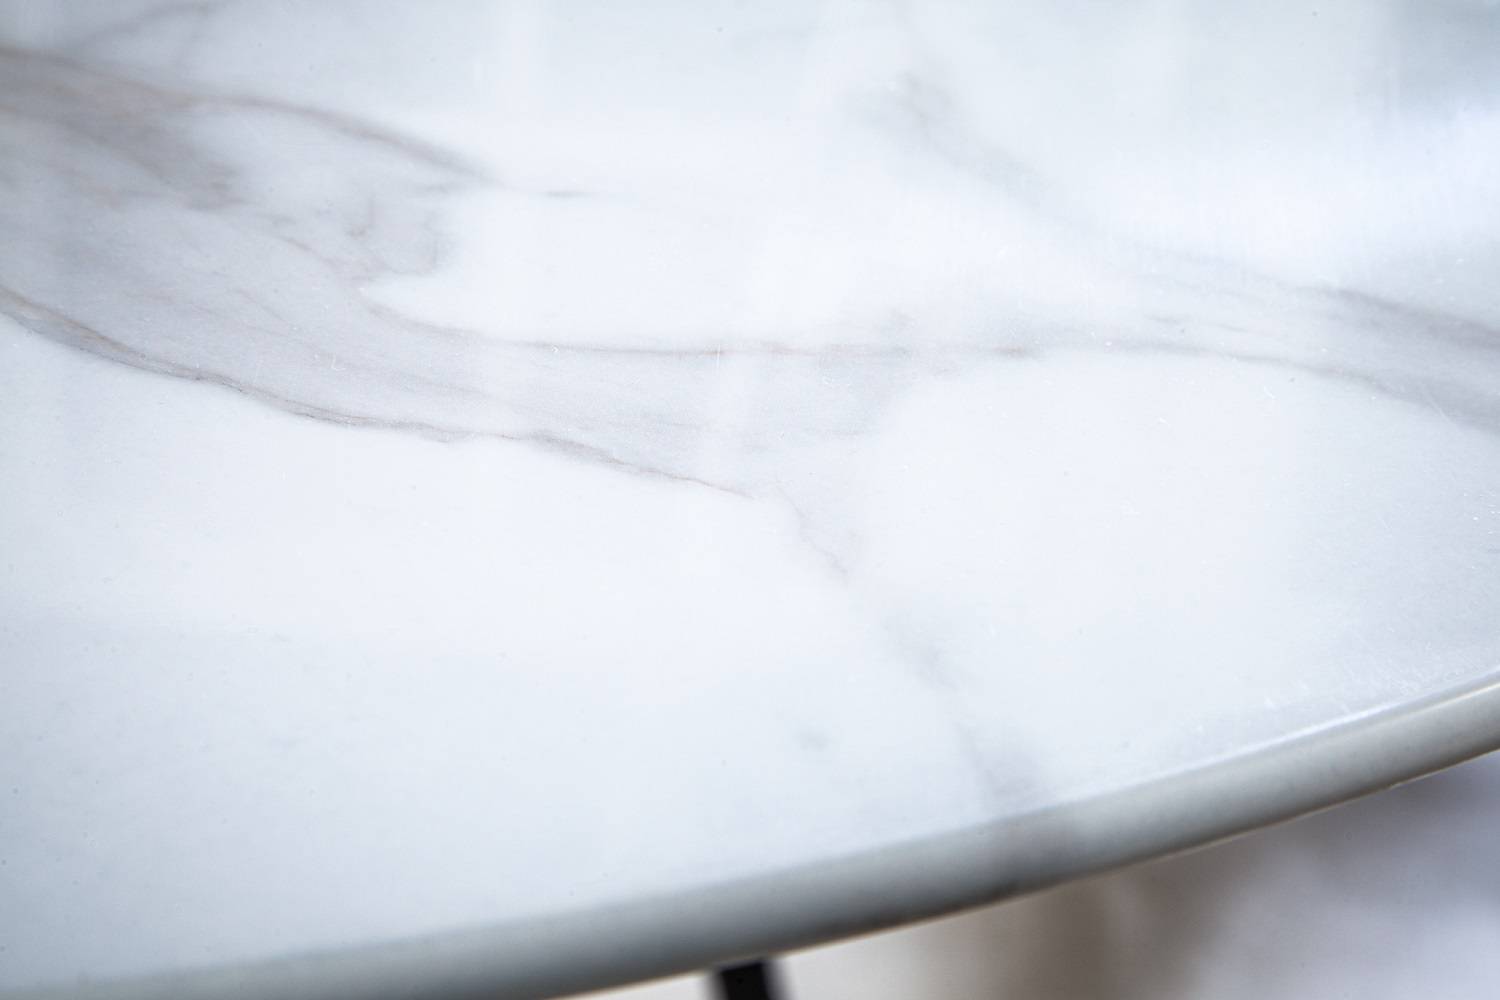 Kulatý jídelní stůl Saima 80 cm bílý - vzor mramor